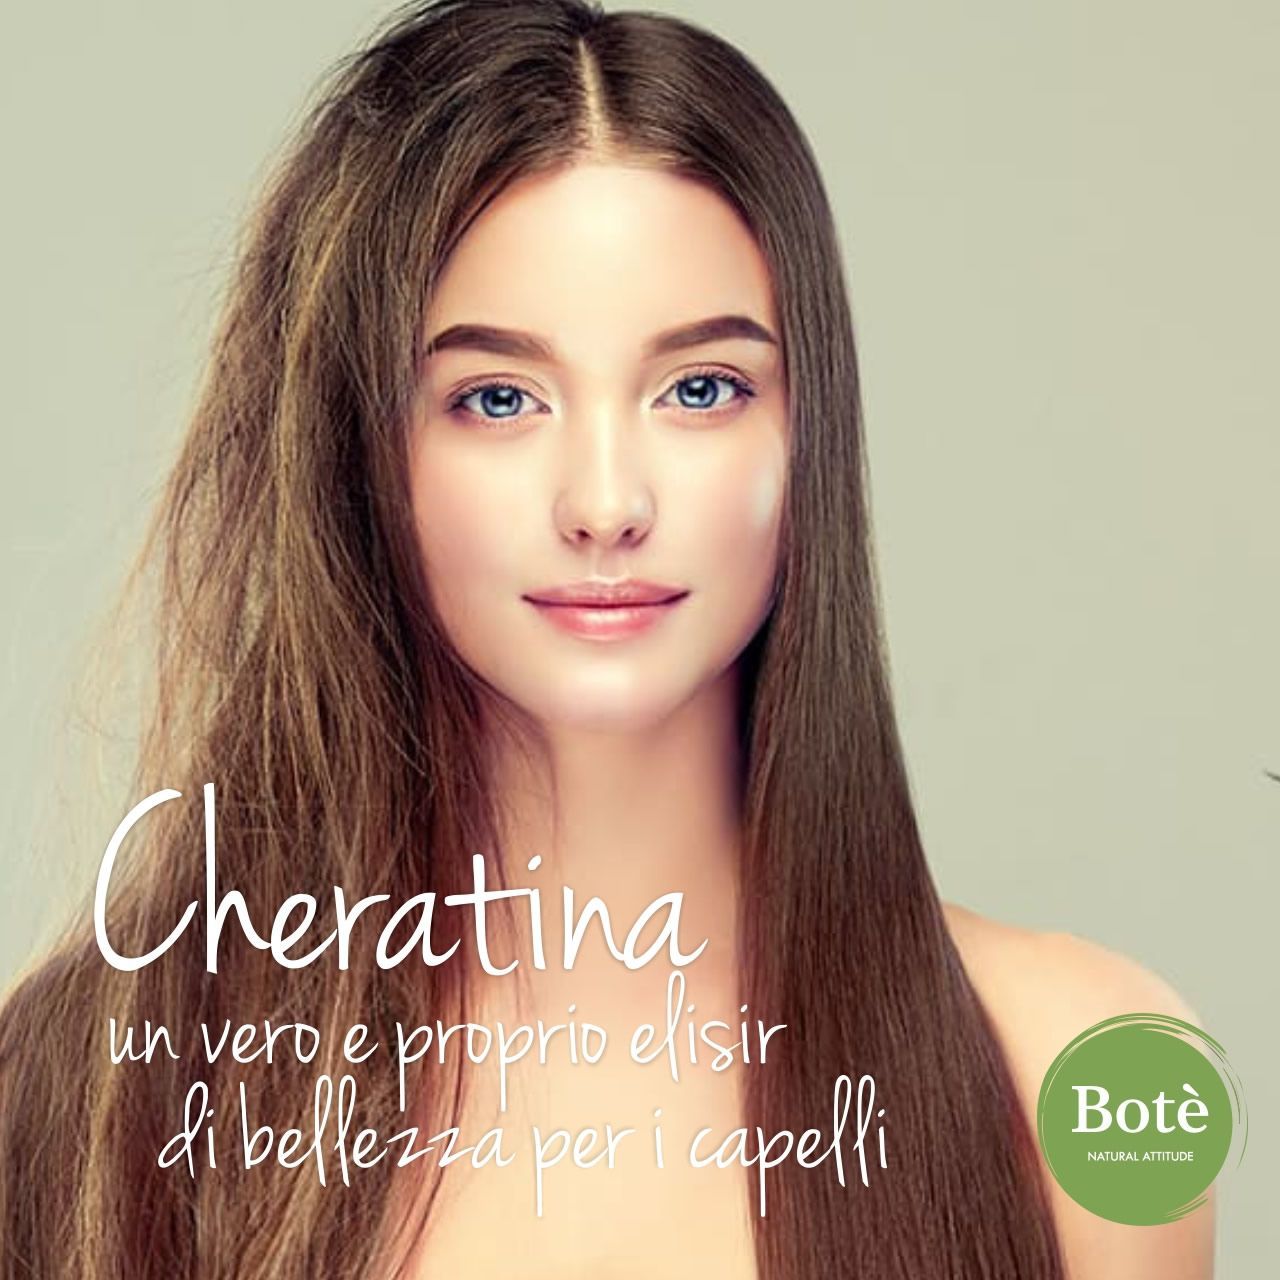 Cheratina è un vero e proprio elisir di bellezza per i capelli